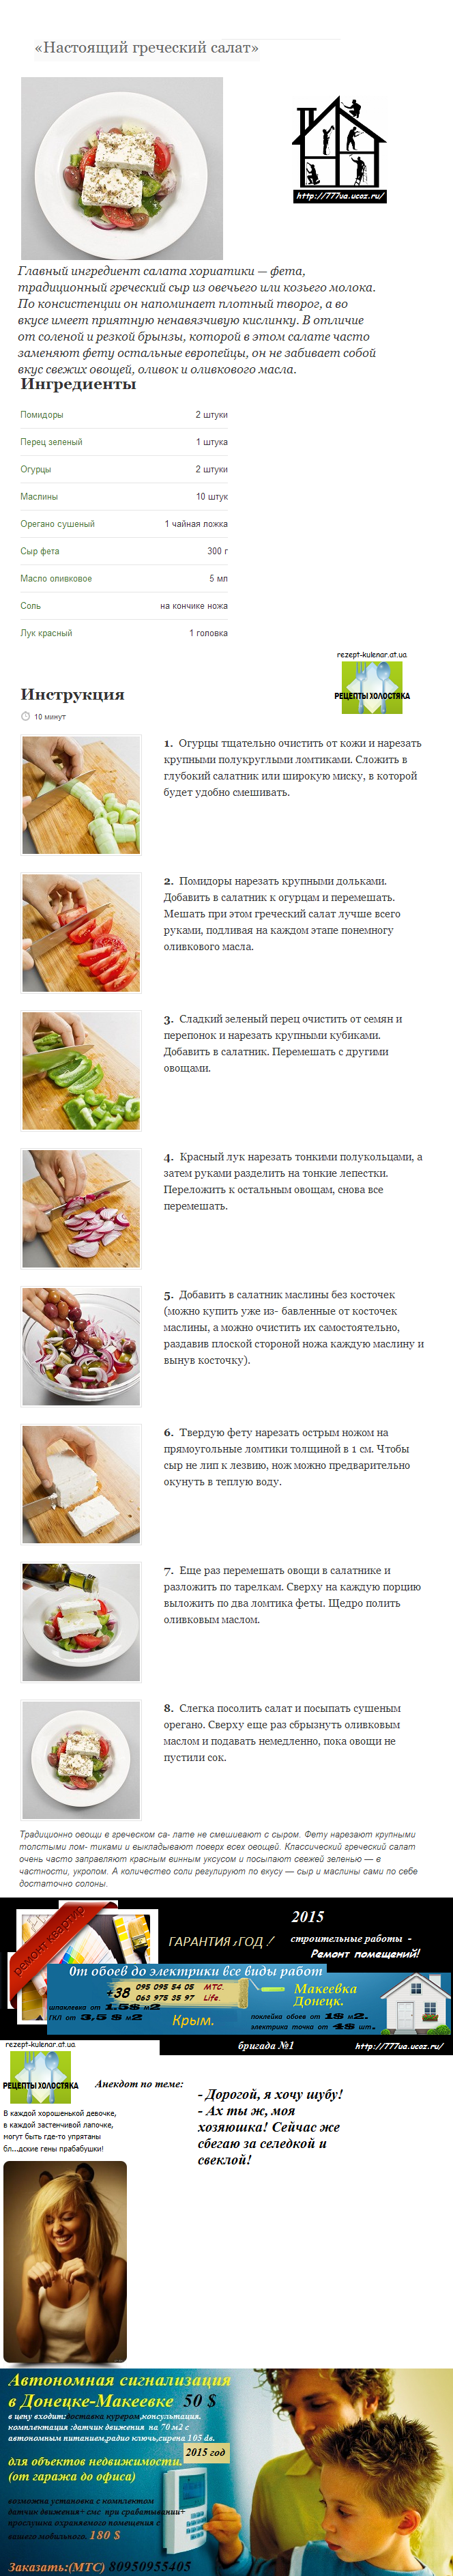 греческий салат лучший рецепт,анекдот салат под шубой